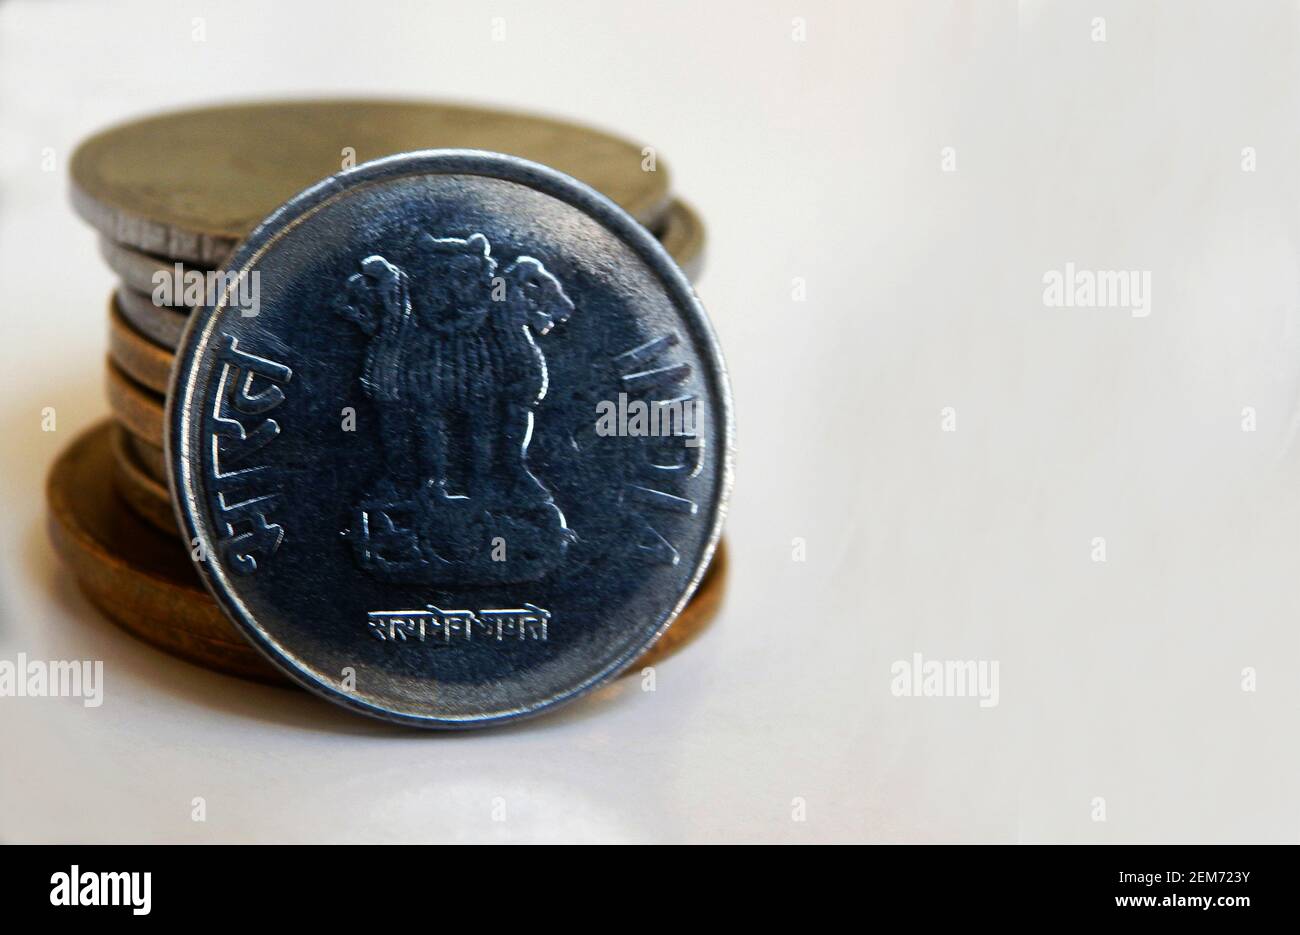 Vue rapprochée des pièces de monnaie indienne avec symbole trois lions Et le mot de l'inde en anglais et le laguage national hindi Banque D'Images